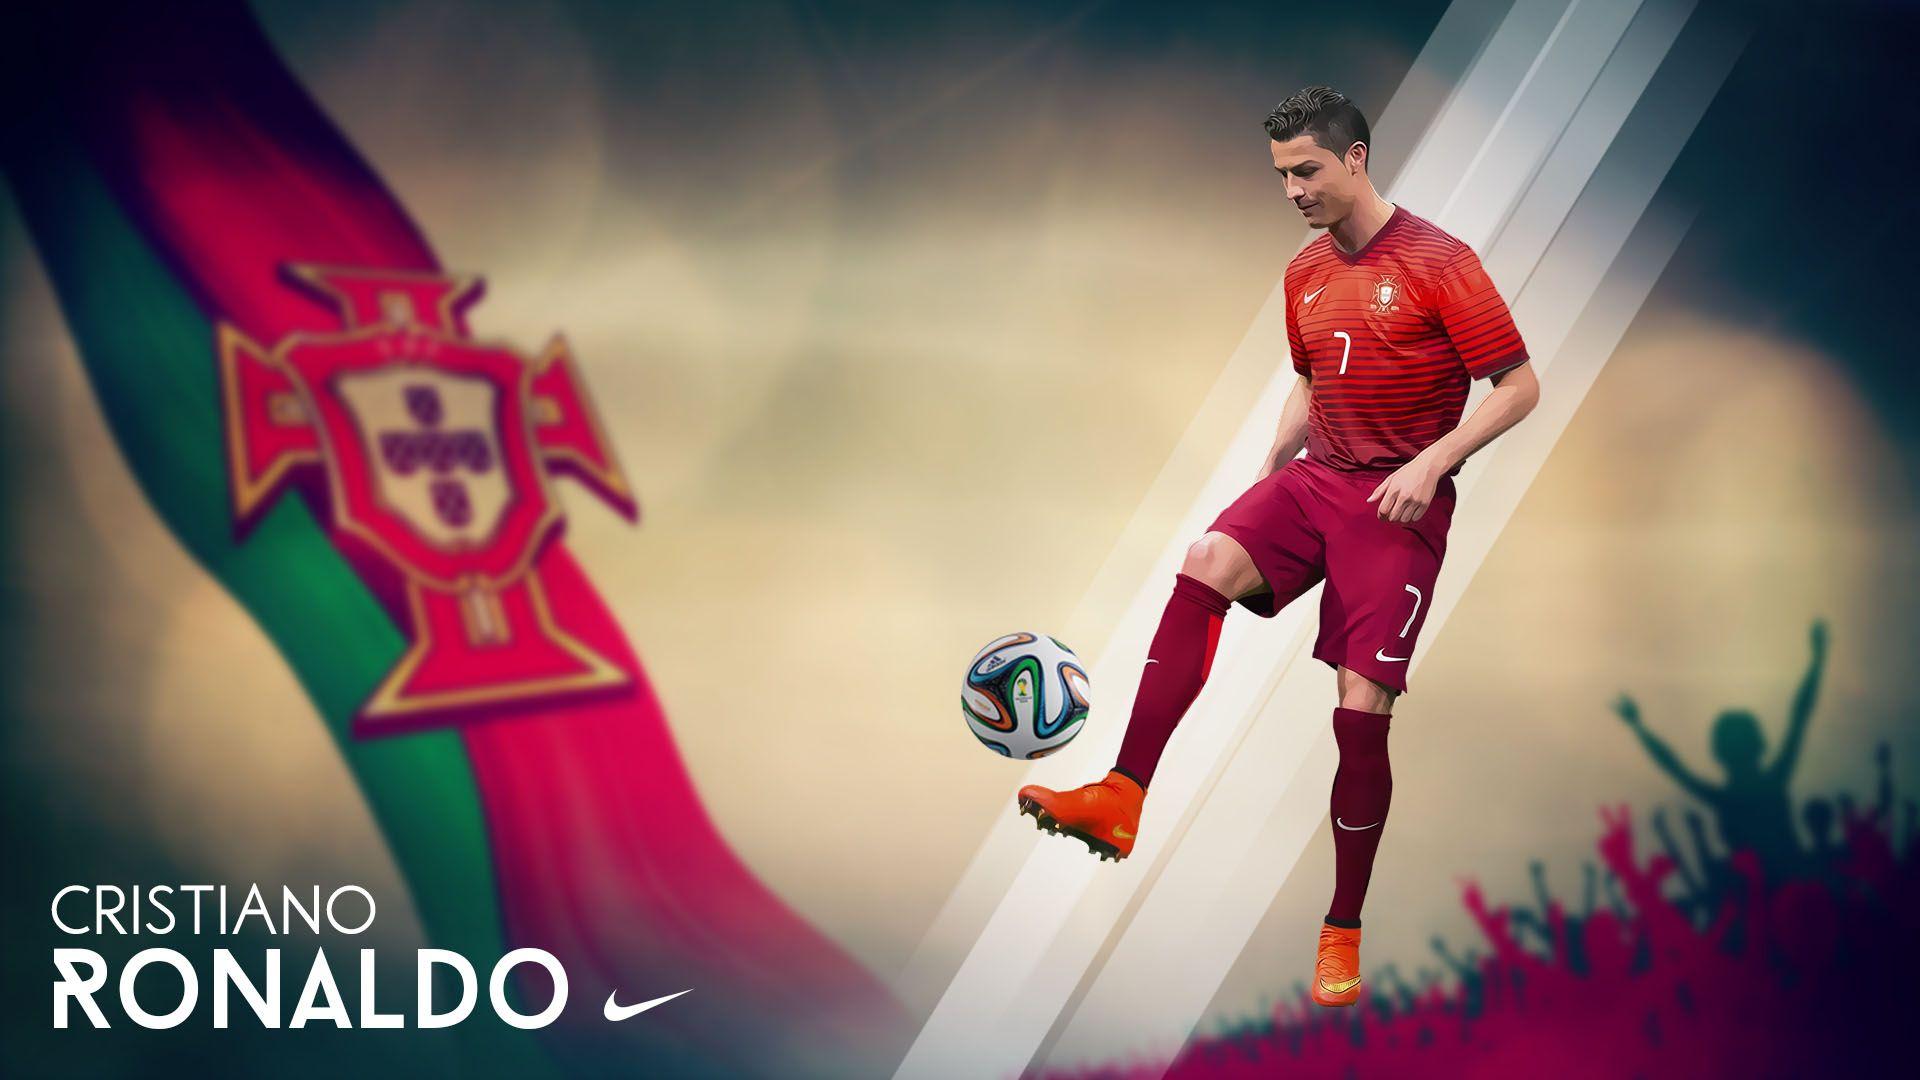 Cristiano Ronaldo Vs Messi 2014 Wallpapers